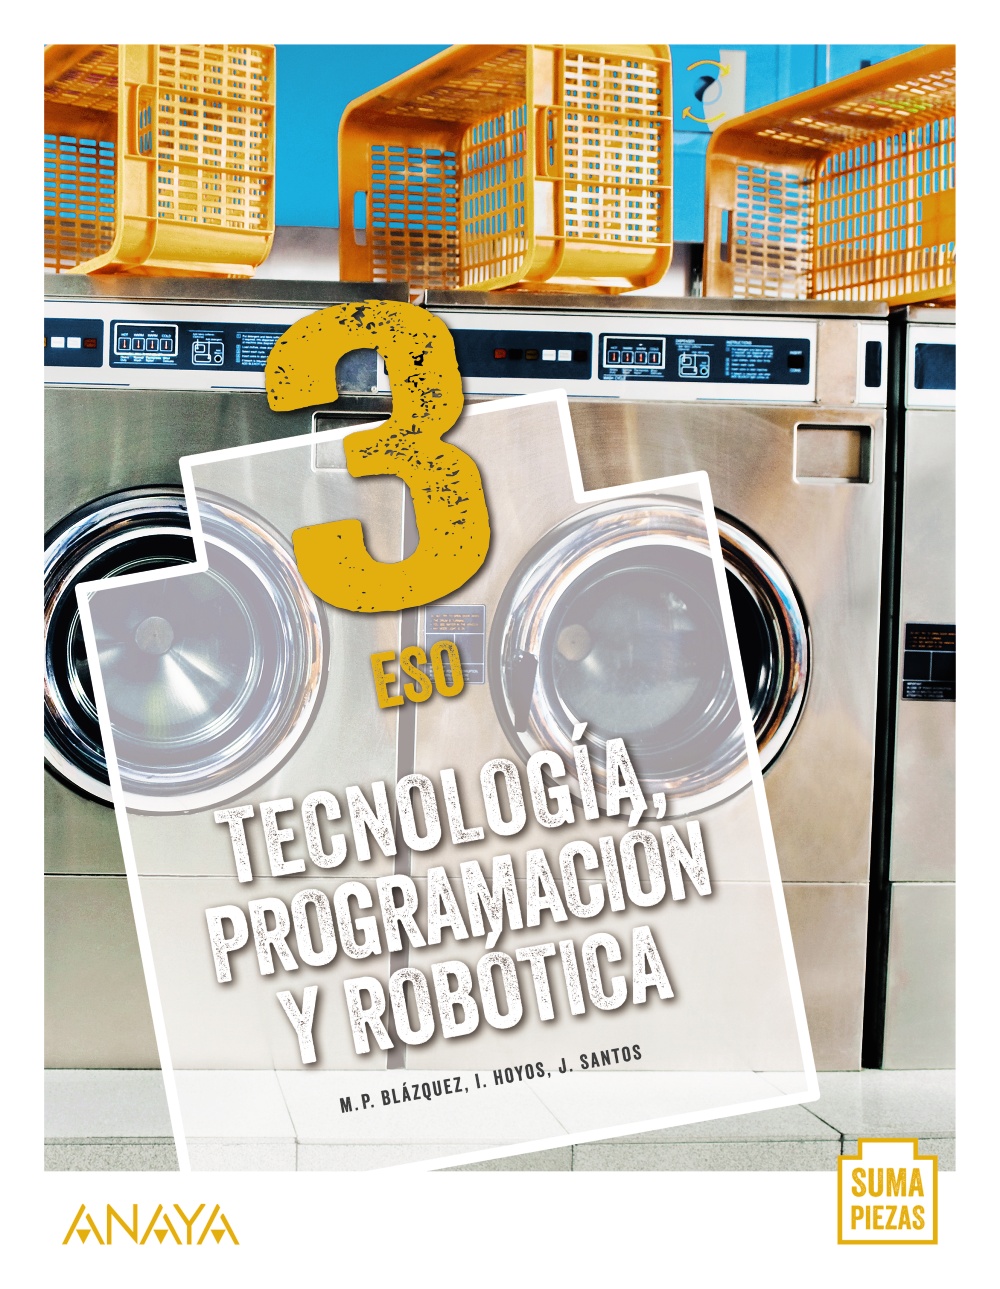 Solucionario Tecnologia Programacion y Robotica 3 ESO Anaya Suma Piezas PDF Ejercicios Resueltos-pdf